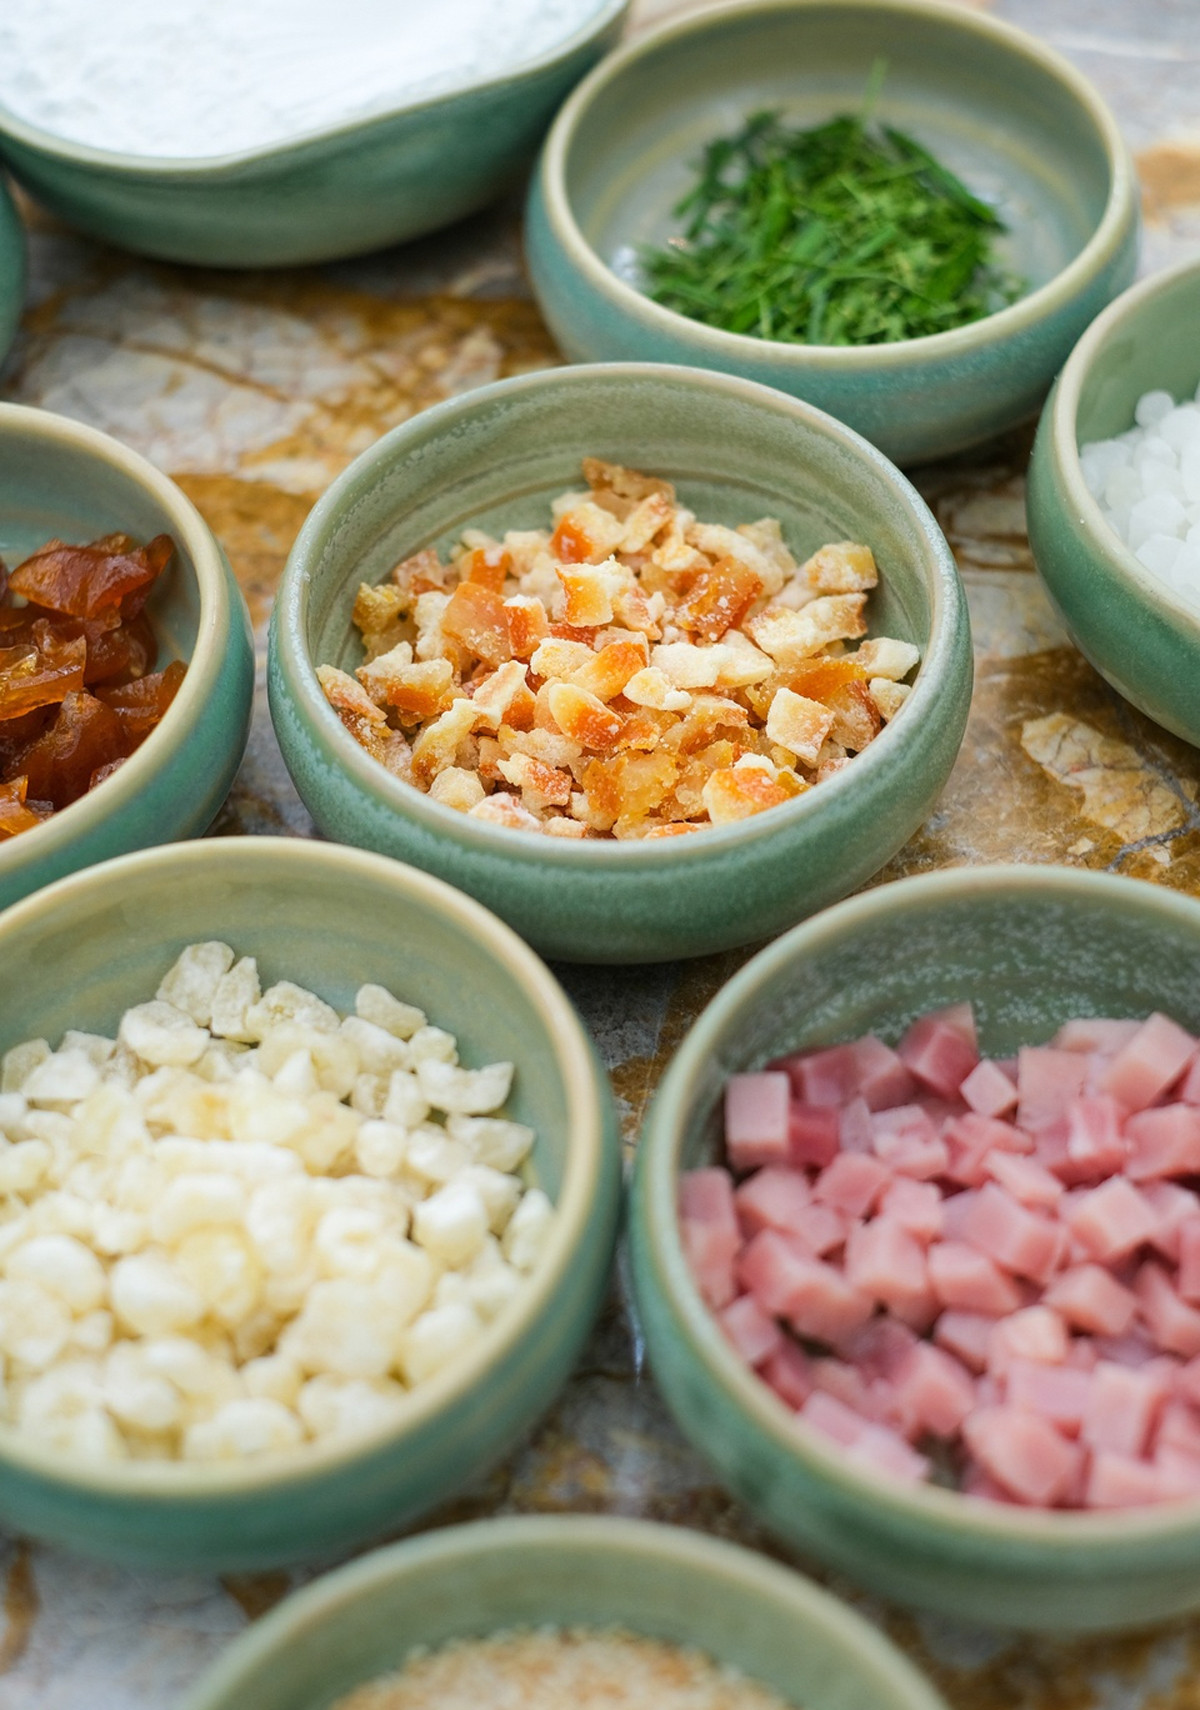 Các loại nhân truyền thống vẫn rất phổ biến, chẳng hạn như: thập cẩm, đậu xanh, hạt sen, trà xanh, khoai môn, trứng muối...